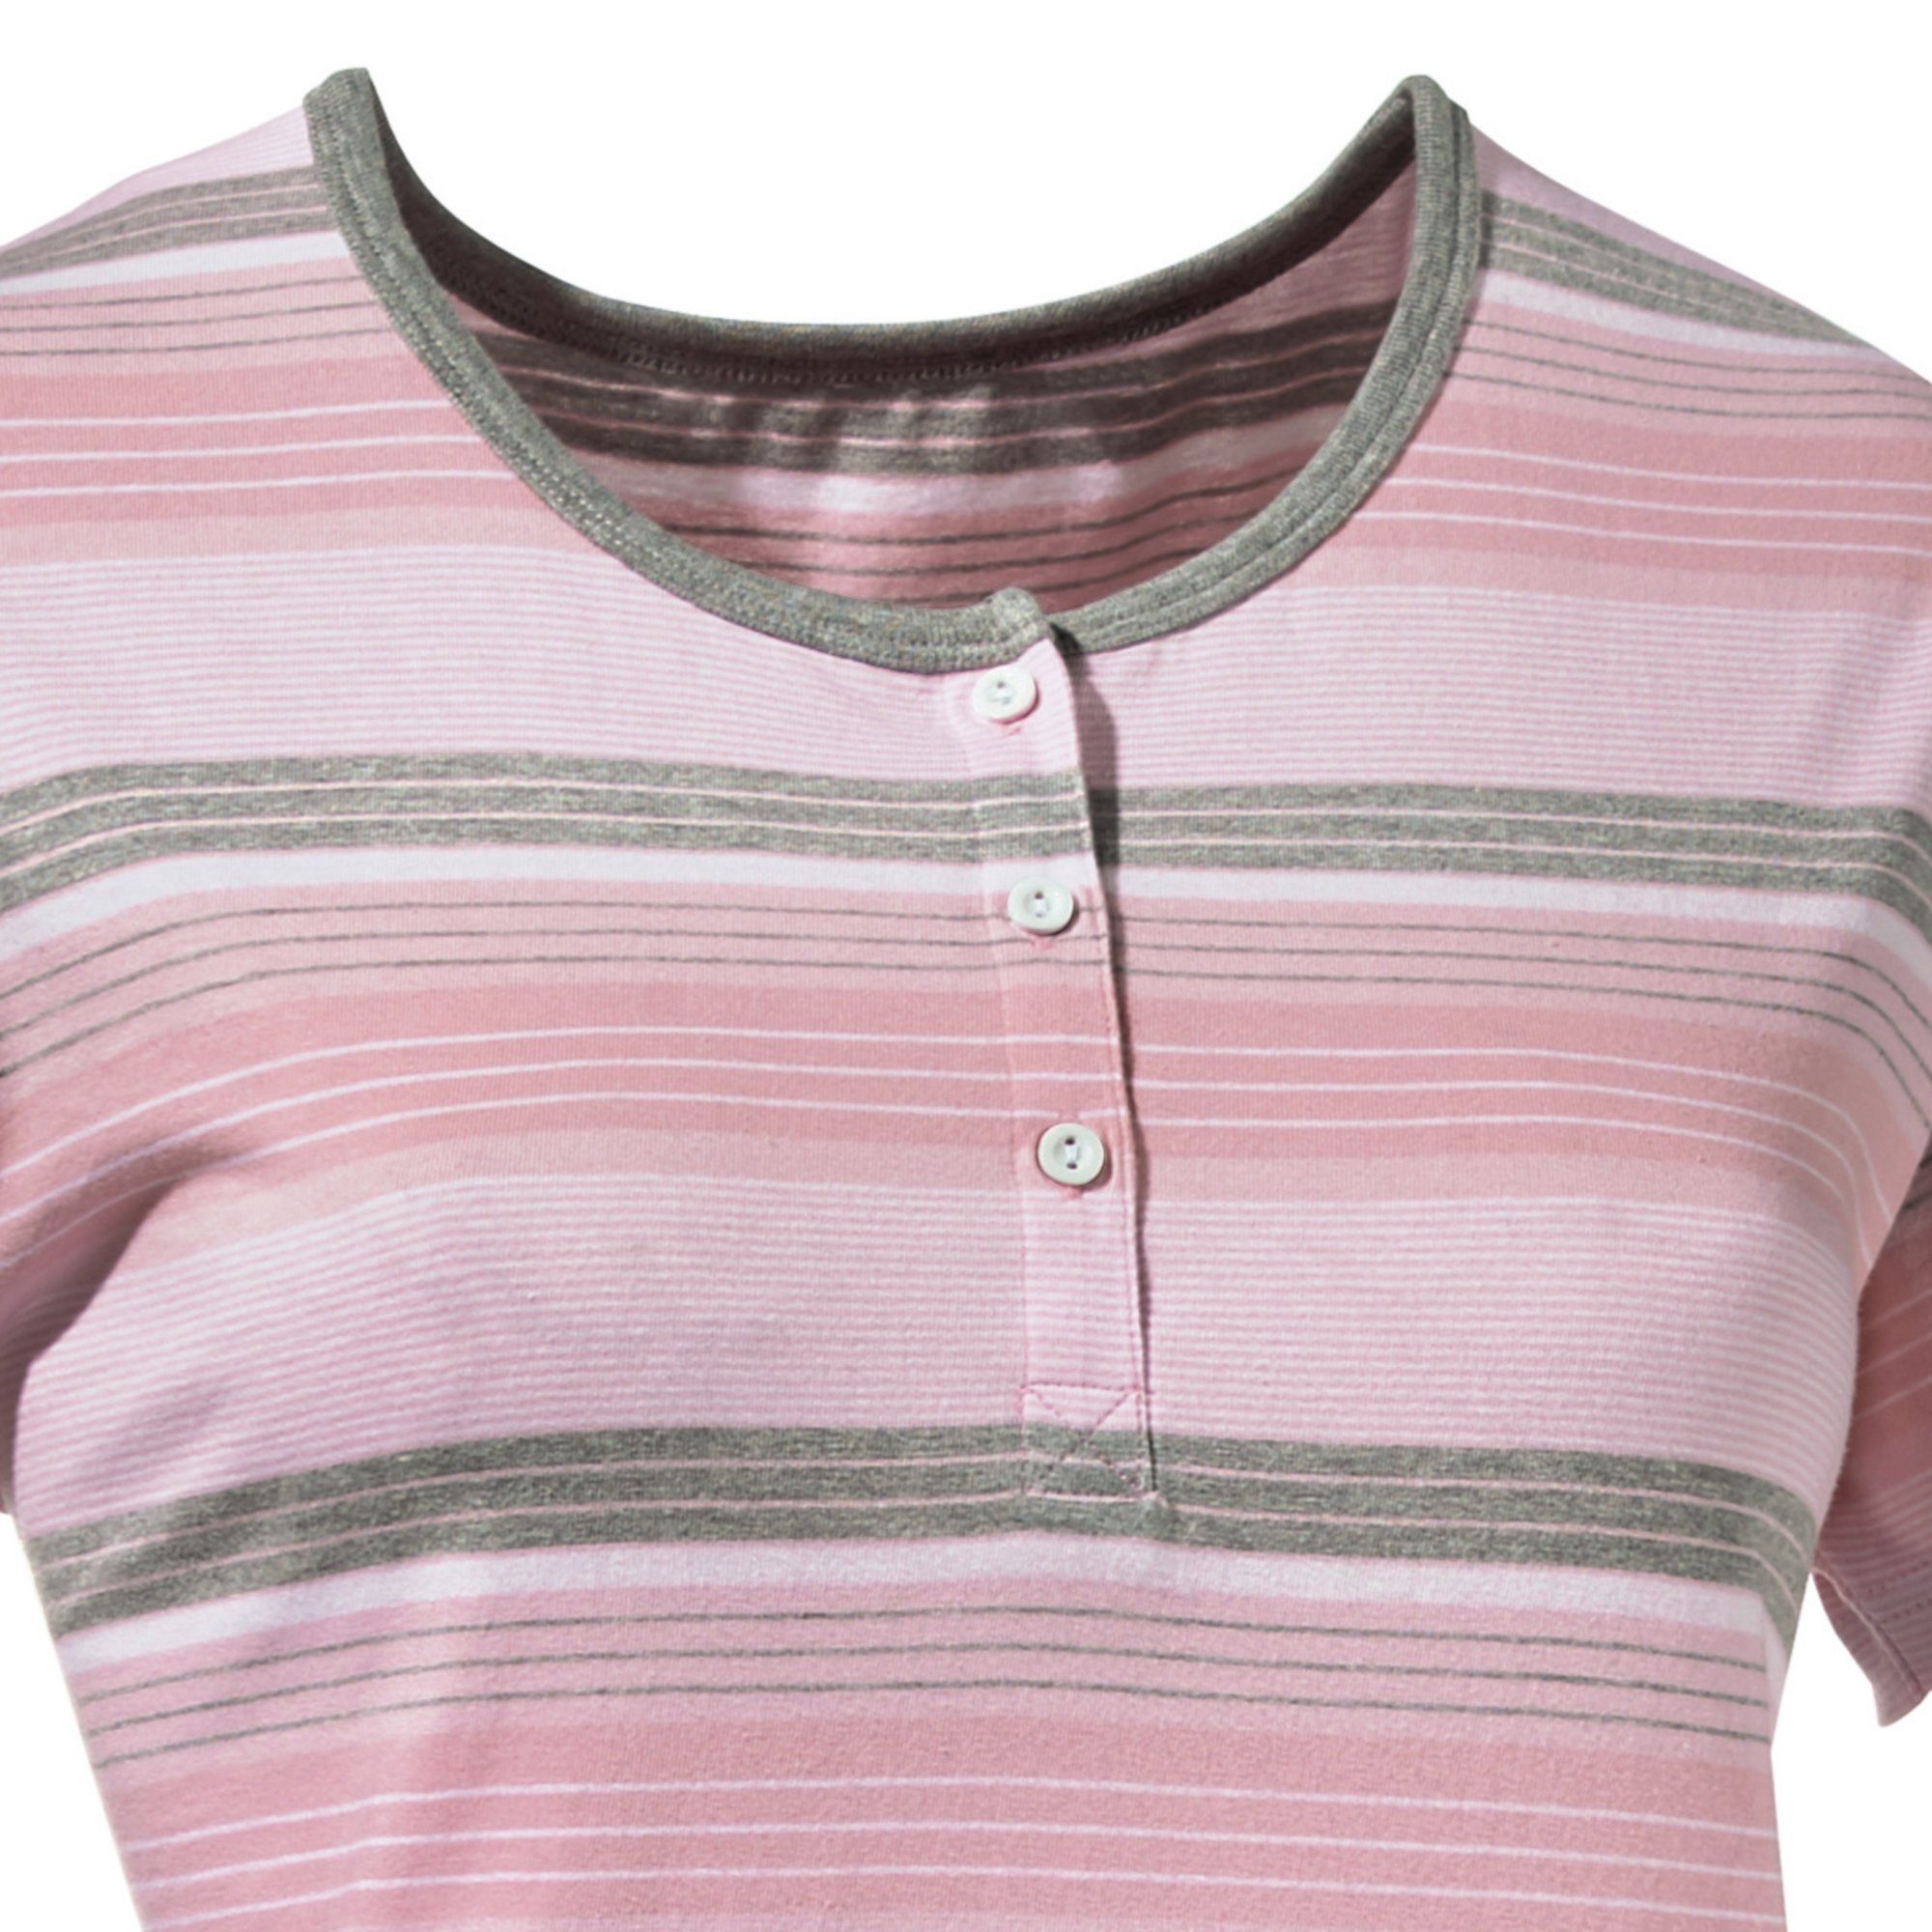 Damen-Nachthemd Streifen REDBEST Single-Jersey Nachthemd